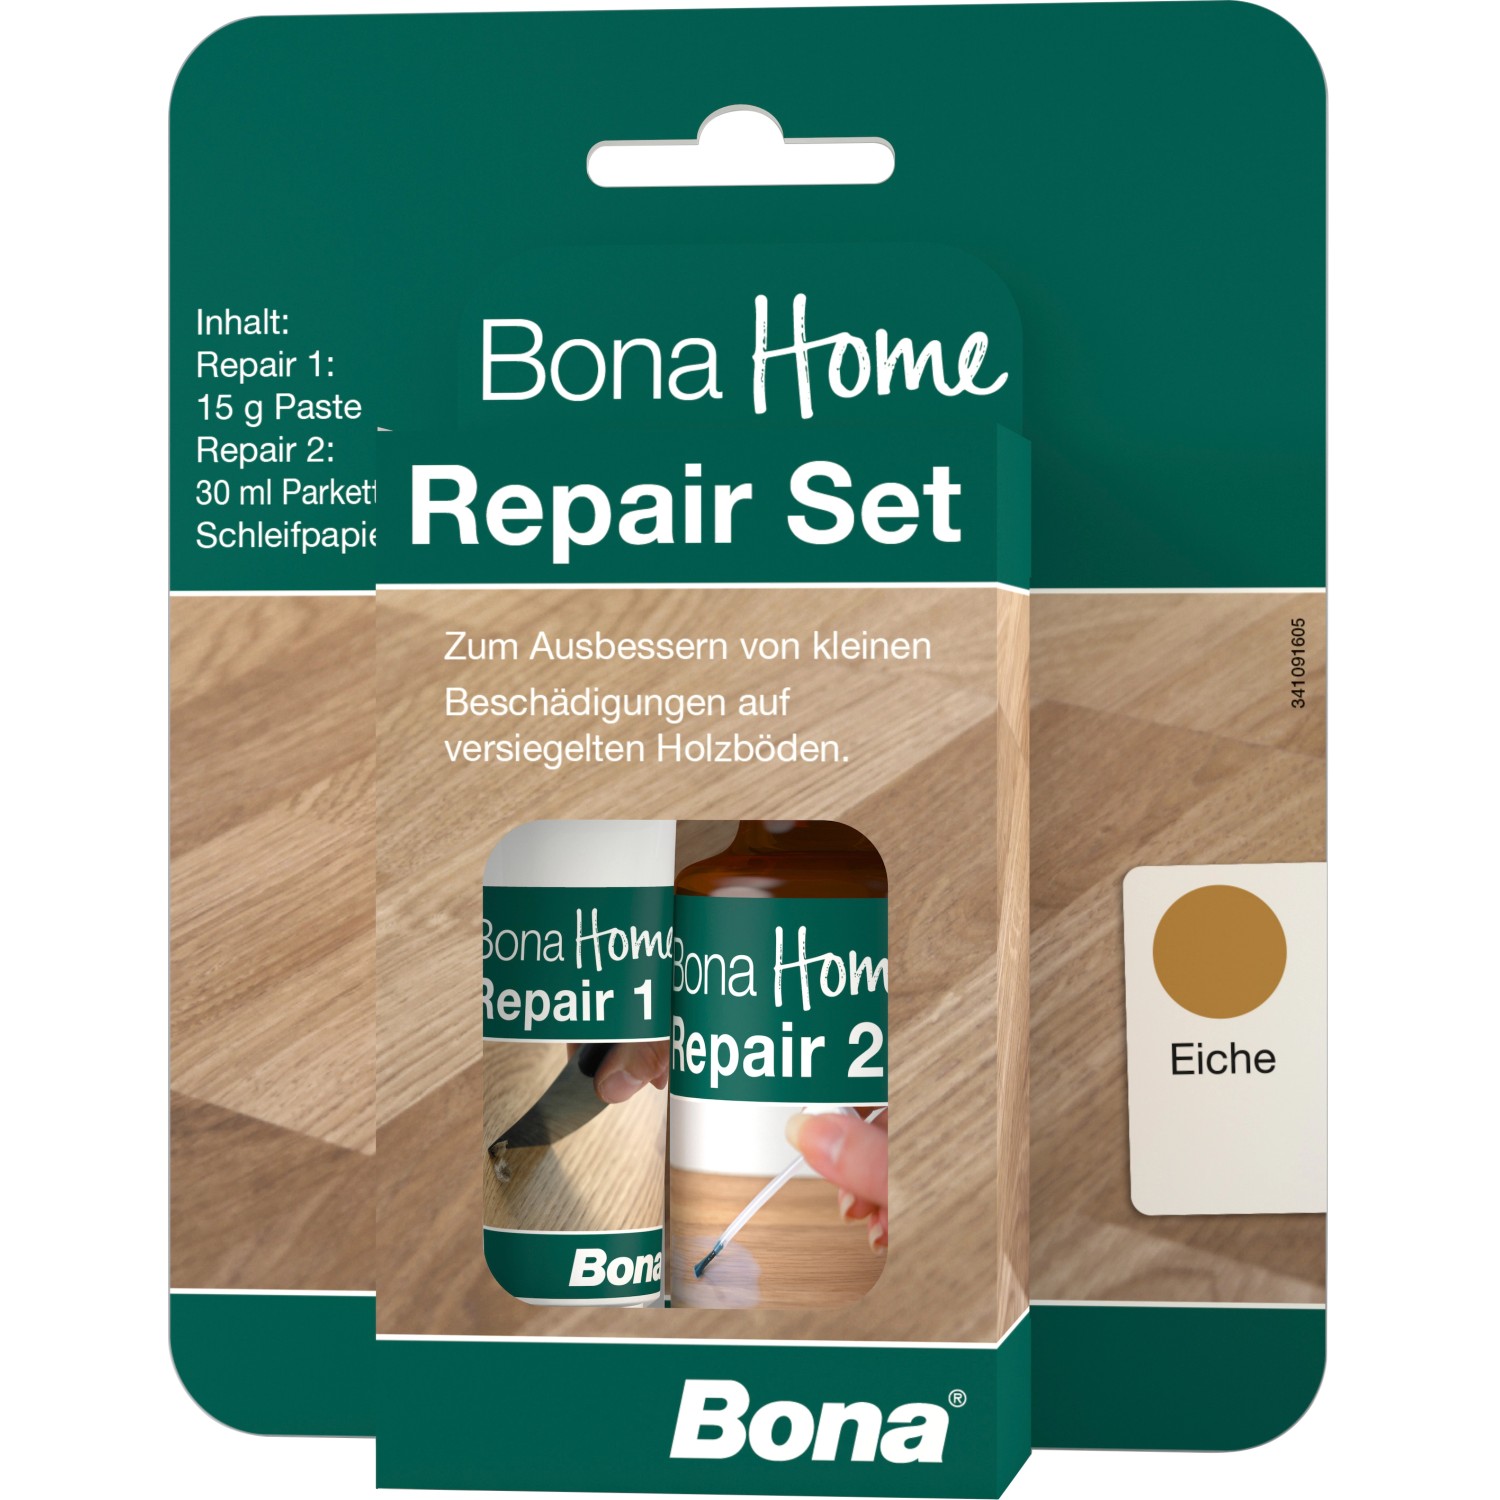 Bona Home Repair Set Eiche von Bona